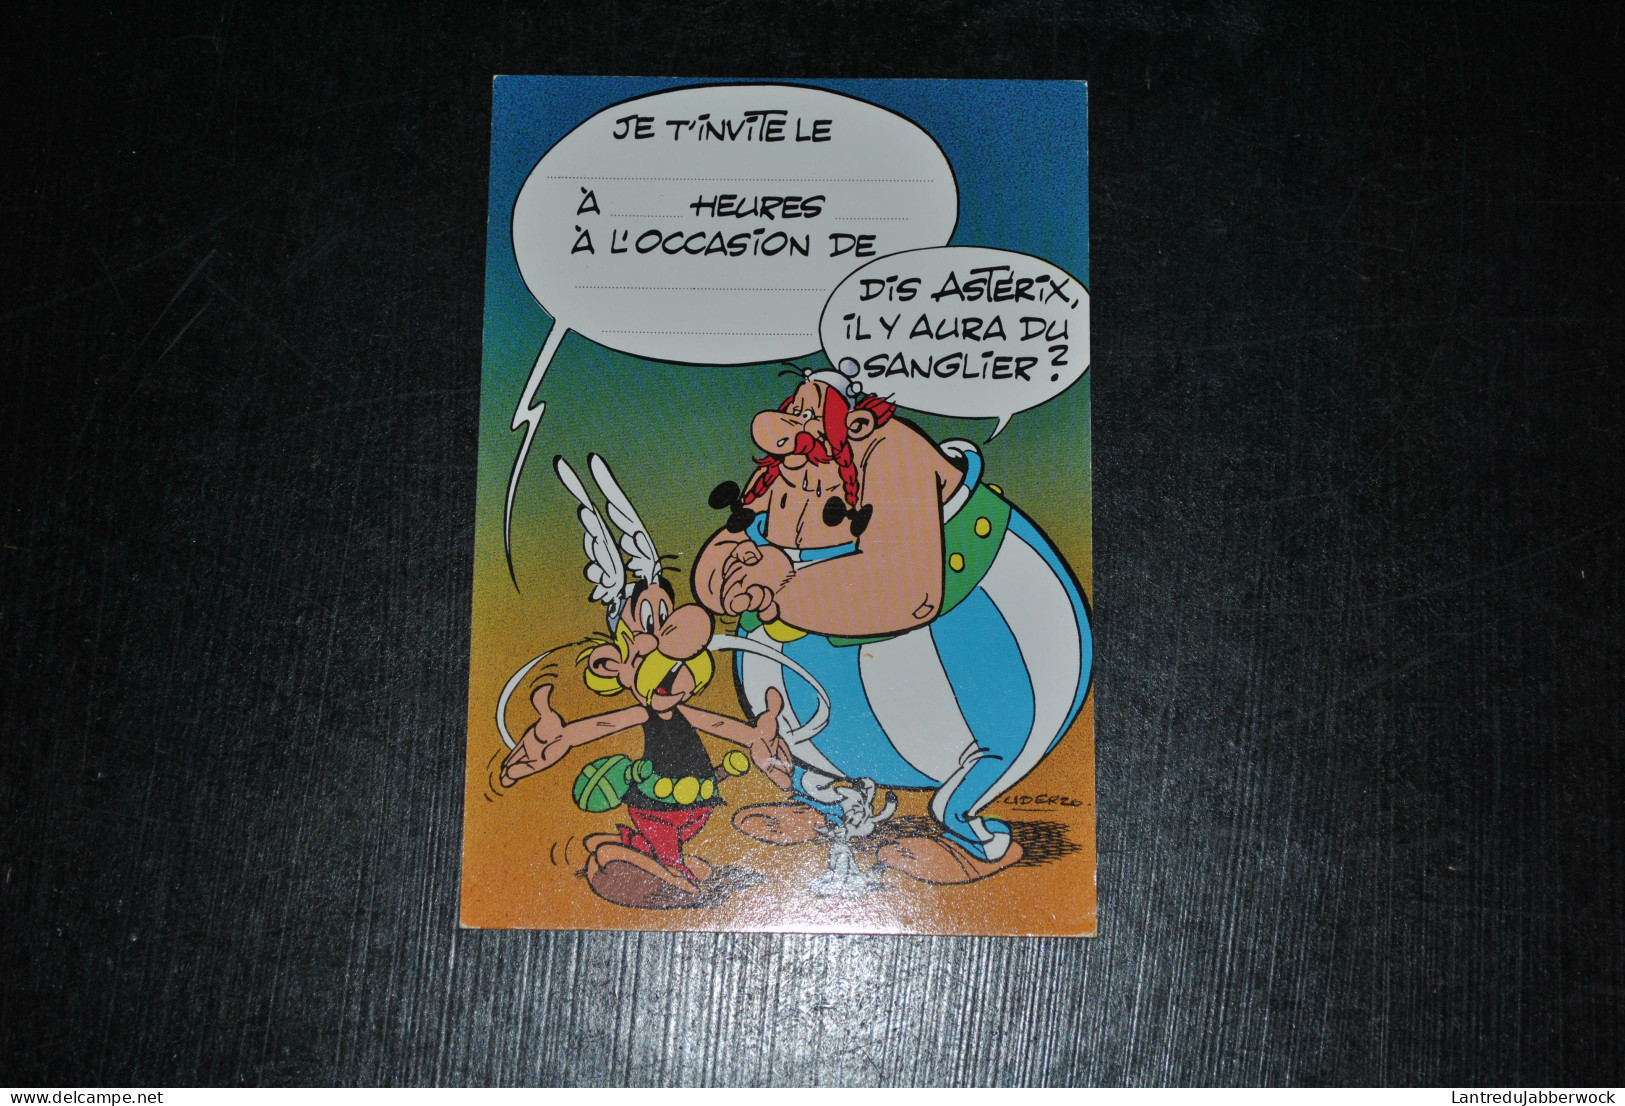 Lot de 8 cartes postales Dont 1 publicité épinards Iglo 1969 Astérix Uderzo - Goscinny Obélix RARE ensemble 